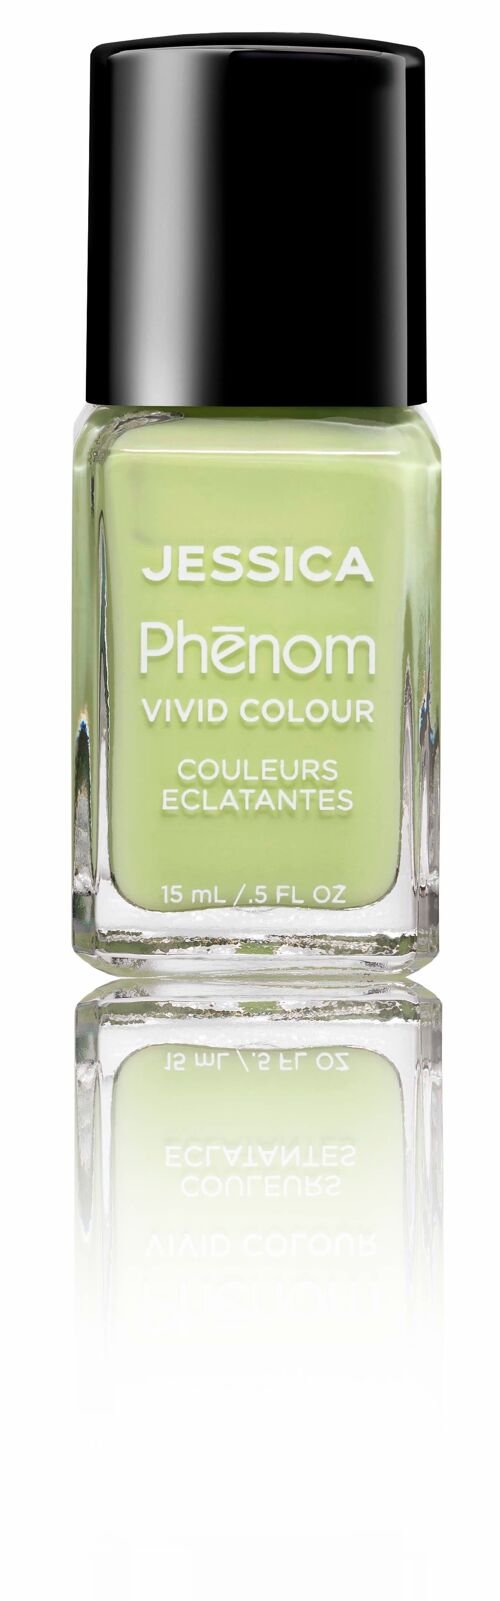 Phenom Colour Pistachio